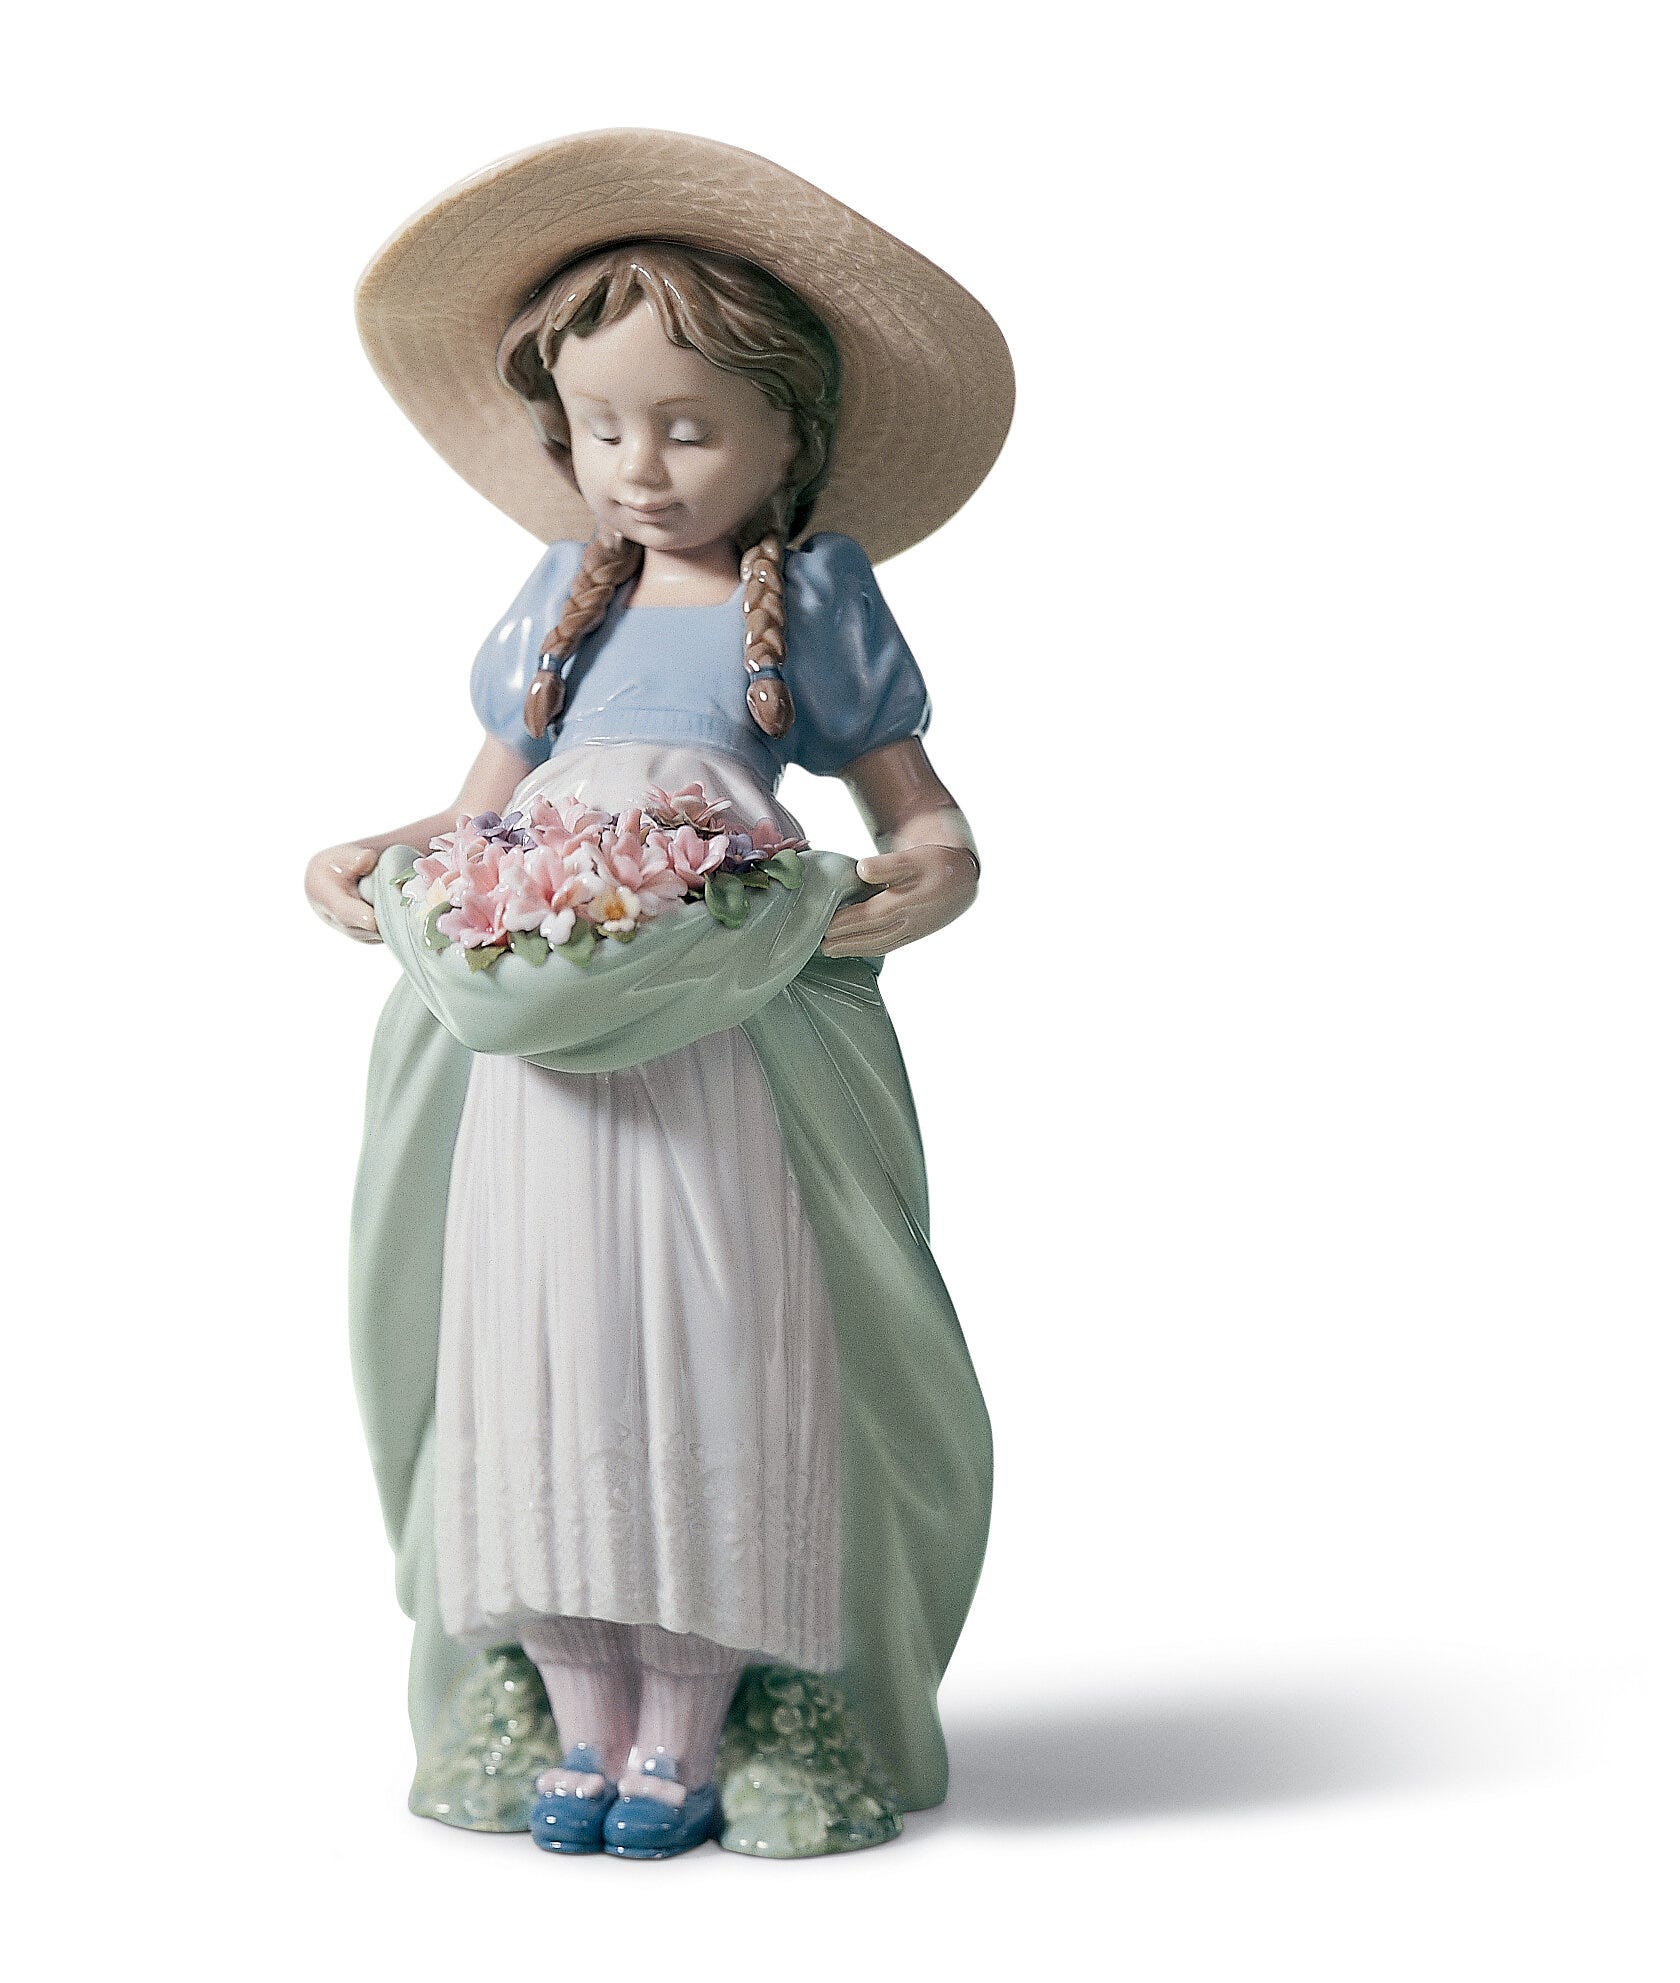 Figurina di ragazza con fiori abbondanti